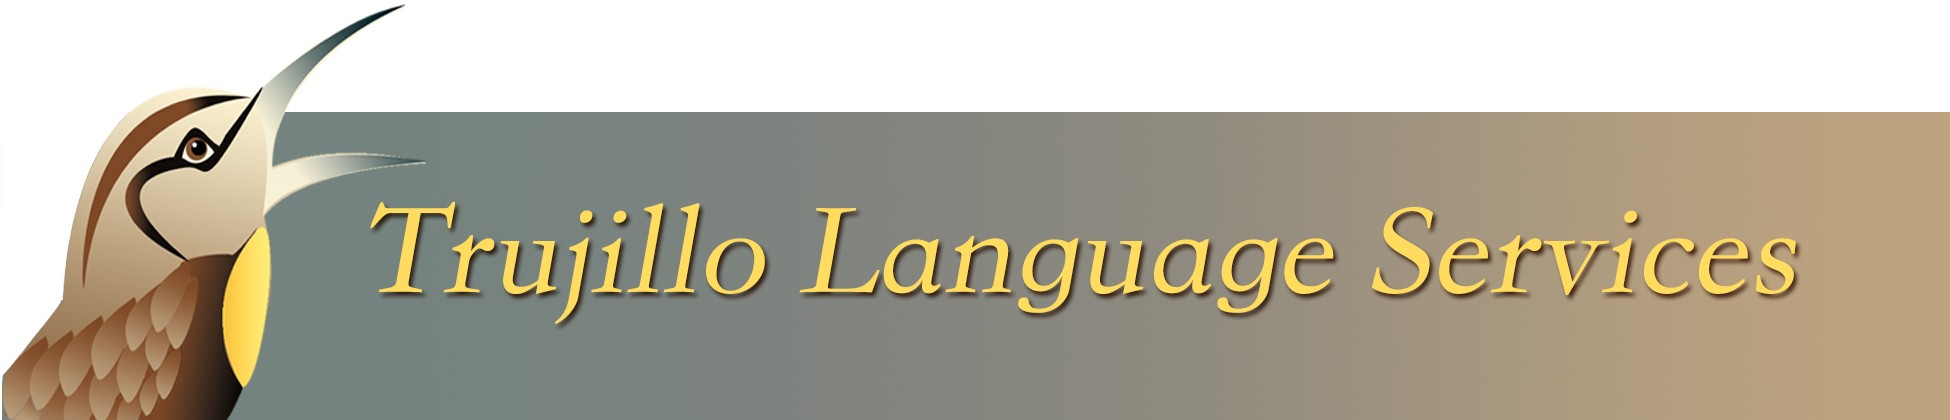 Trujillo Language Services